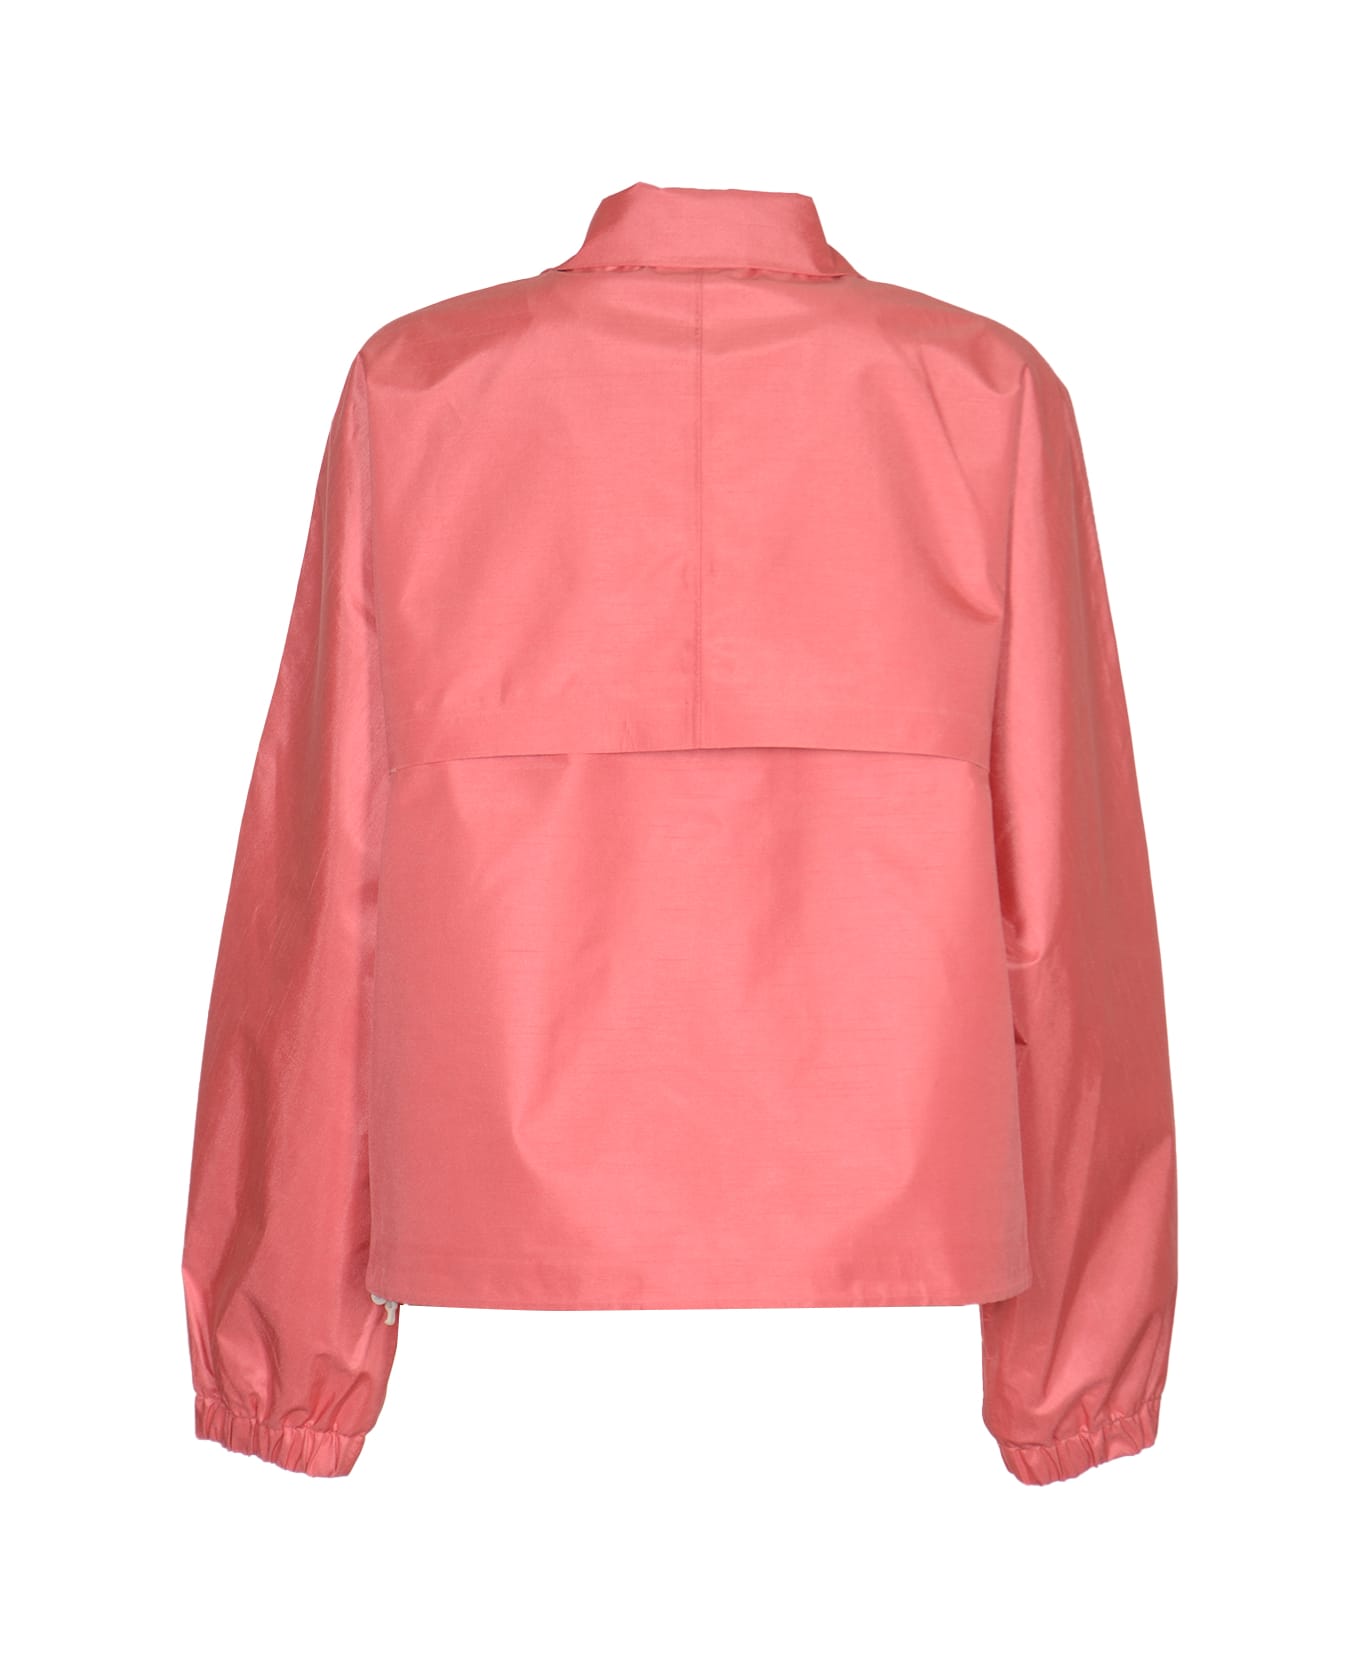 K-Way Soisir Coat - Pink/Camel ジャケット